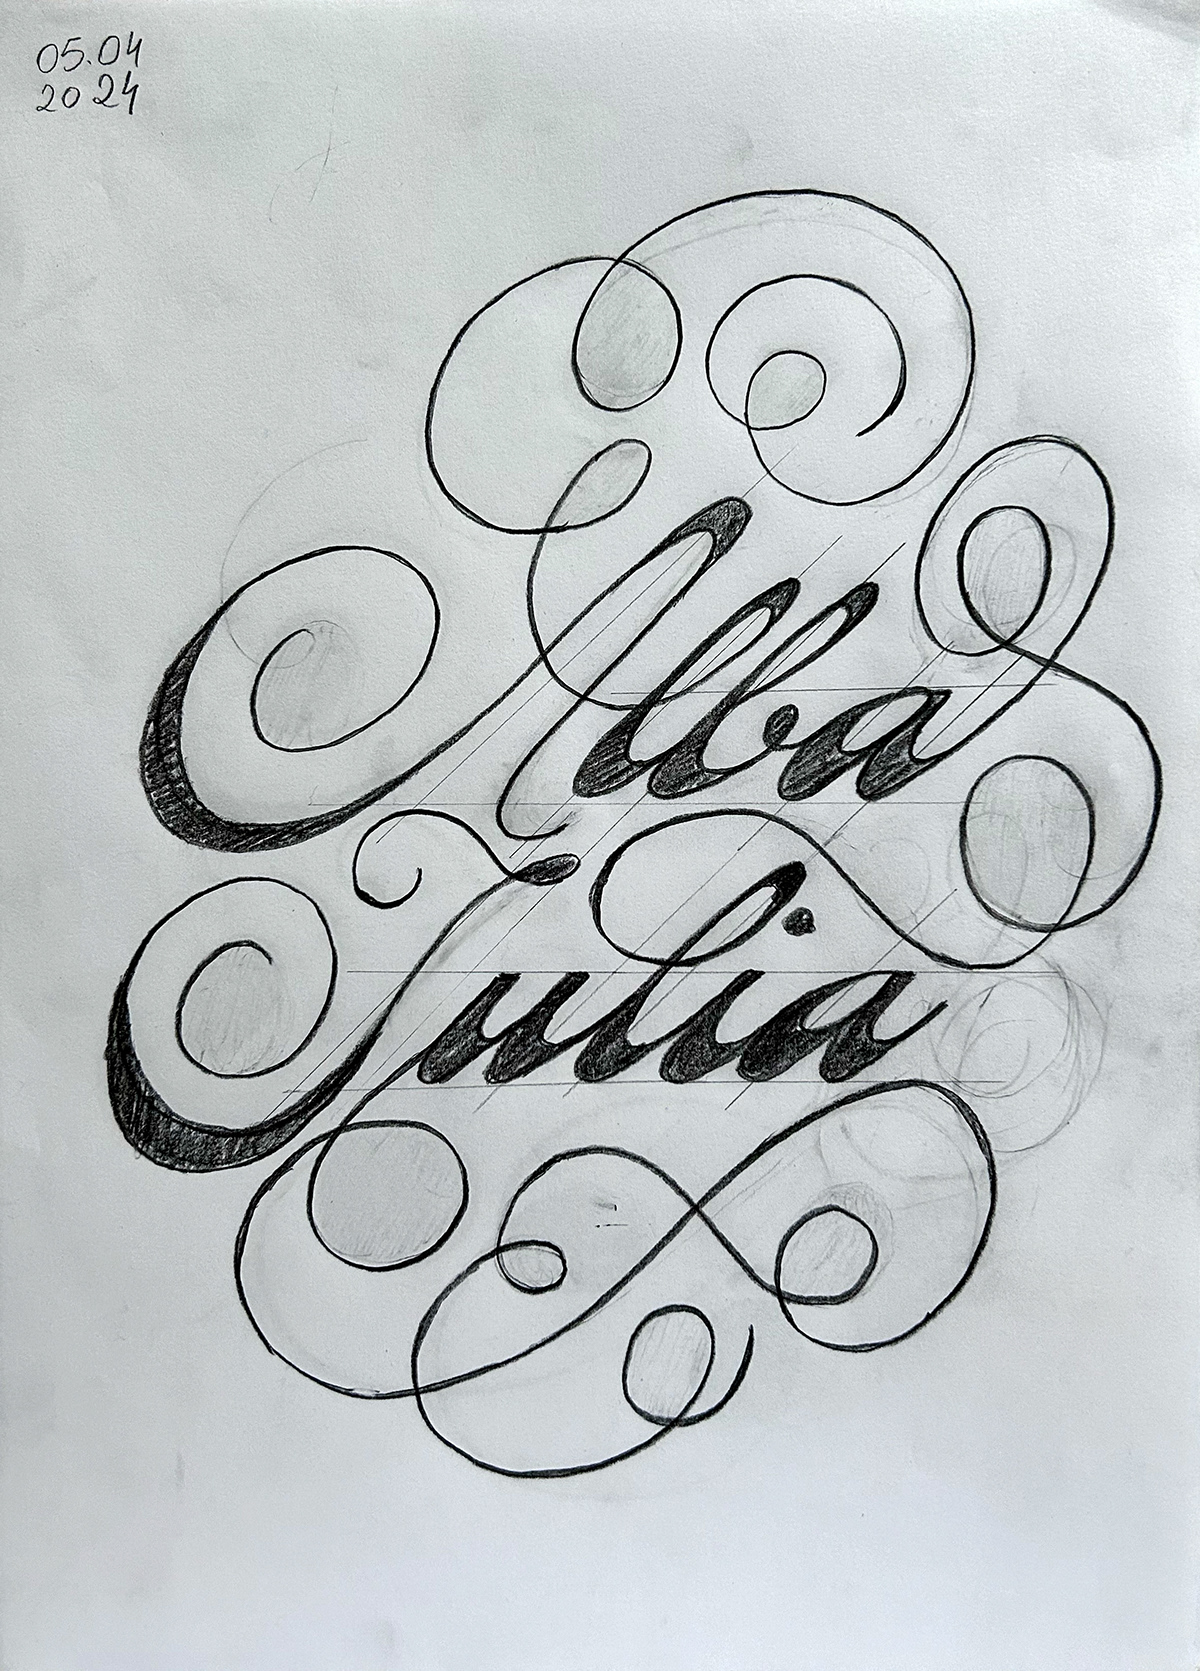 lettering design alba iulia romania city